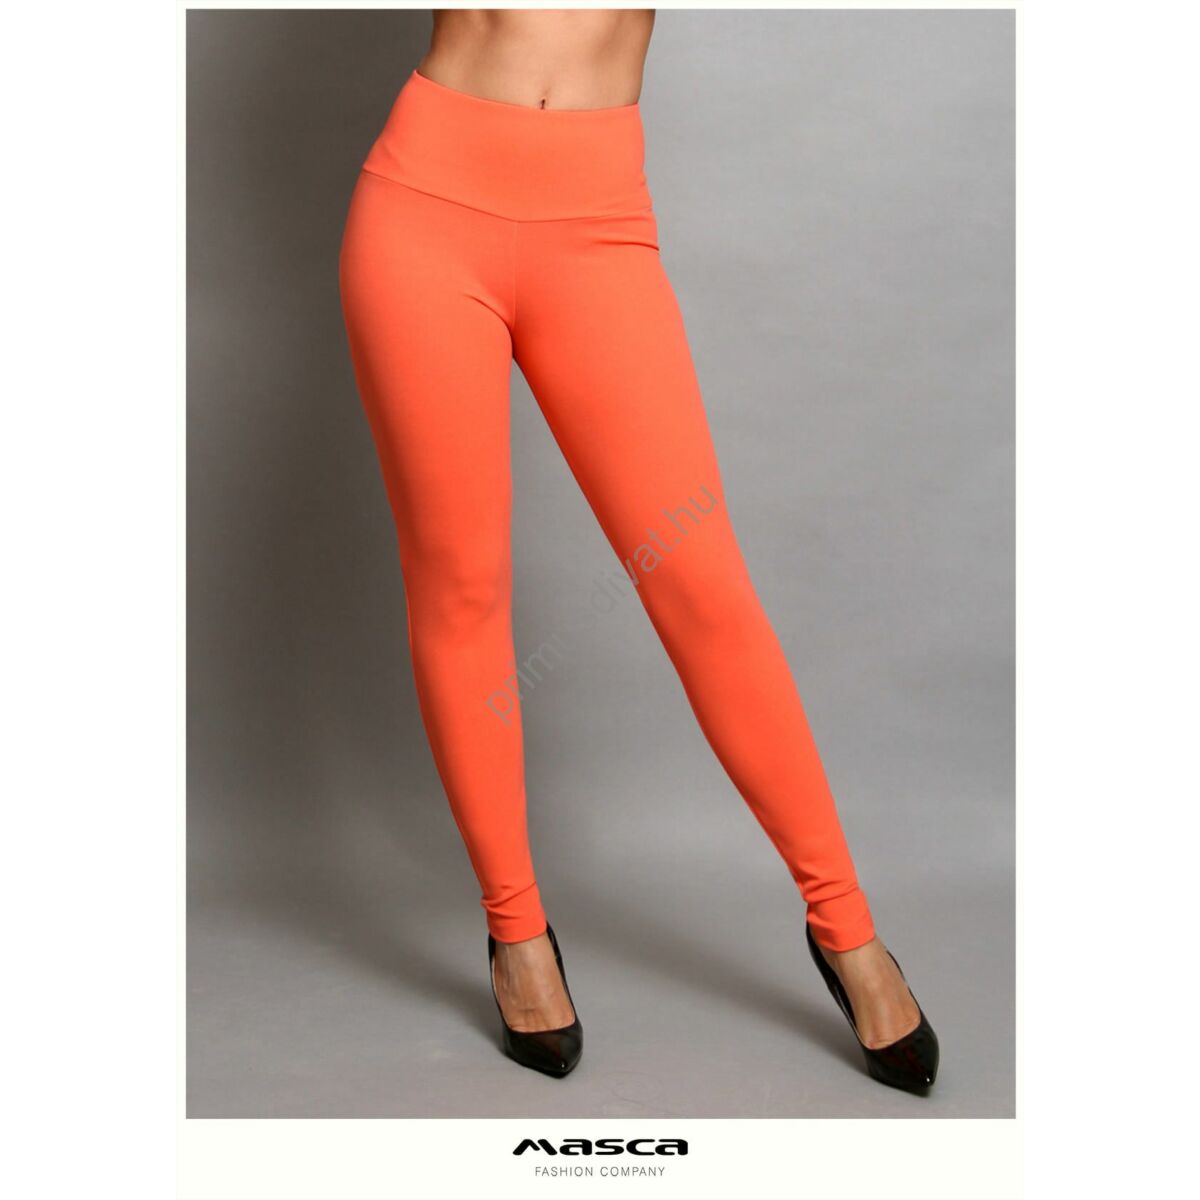 Masca Fashion magasított derekú narancssárga elasztikus leggings, cicanadrág, hátul íves szabással, hímzett zsebbel